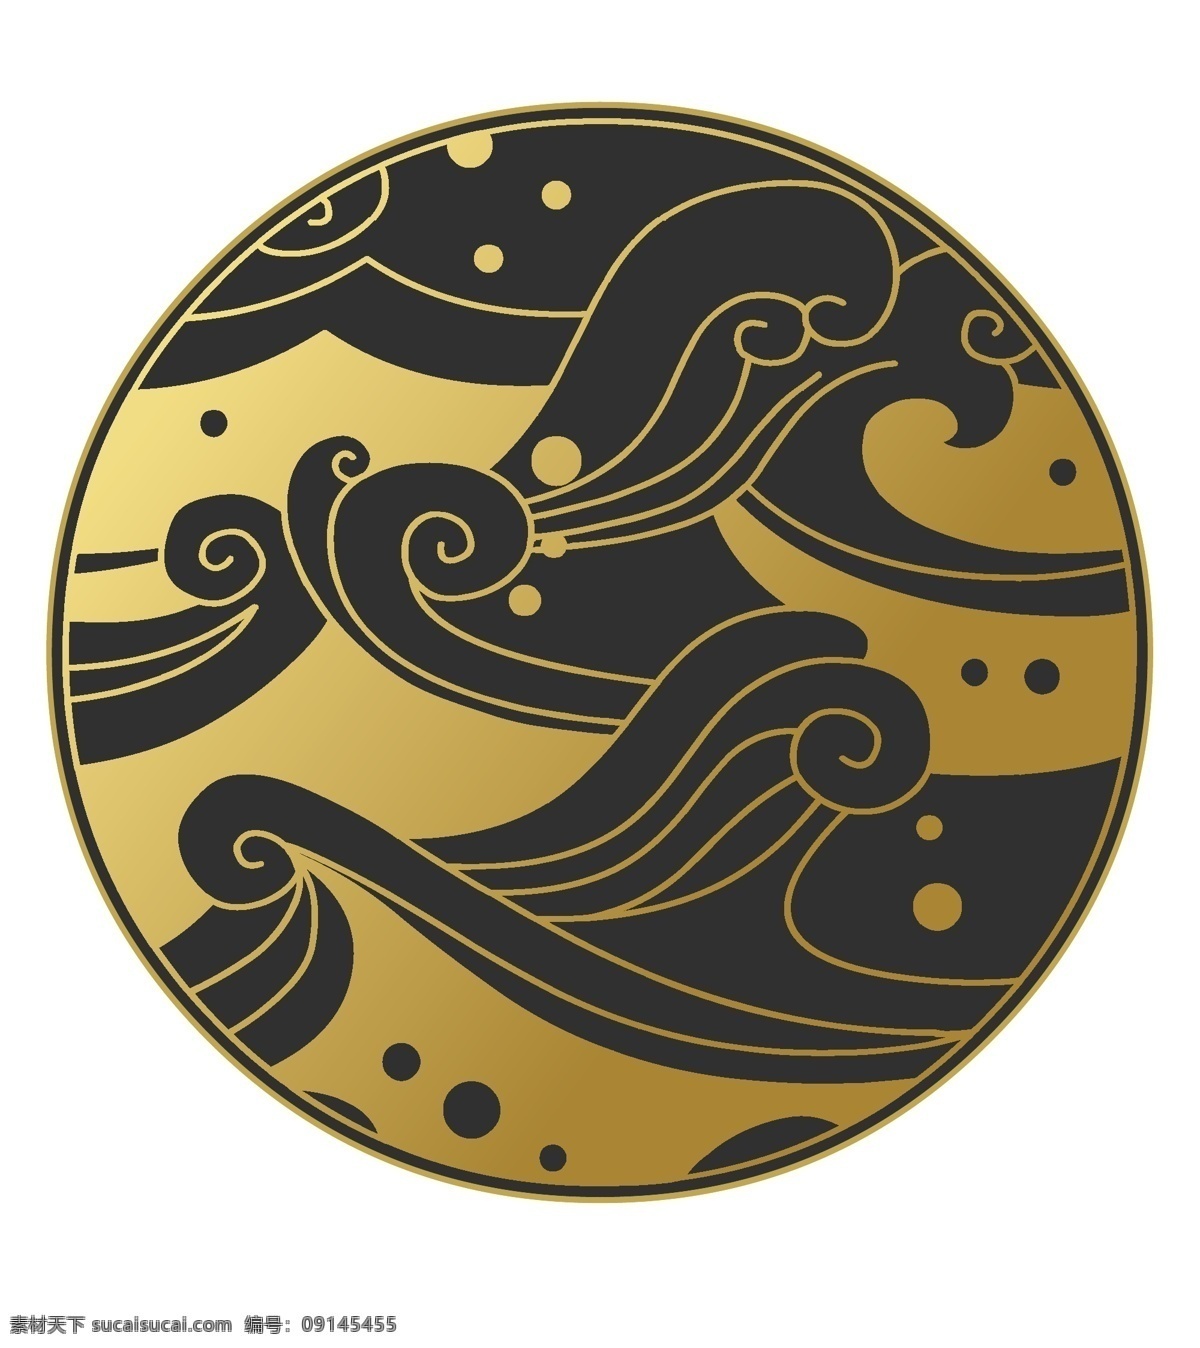 中国 风 创意 花纹 图案 中国风 传统 金色线条 海浪 云纹 圆形 装饰画 简笔 装饰图案 雕刻图案 波纹 文化艺术